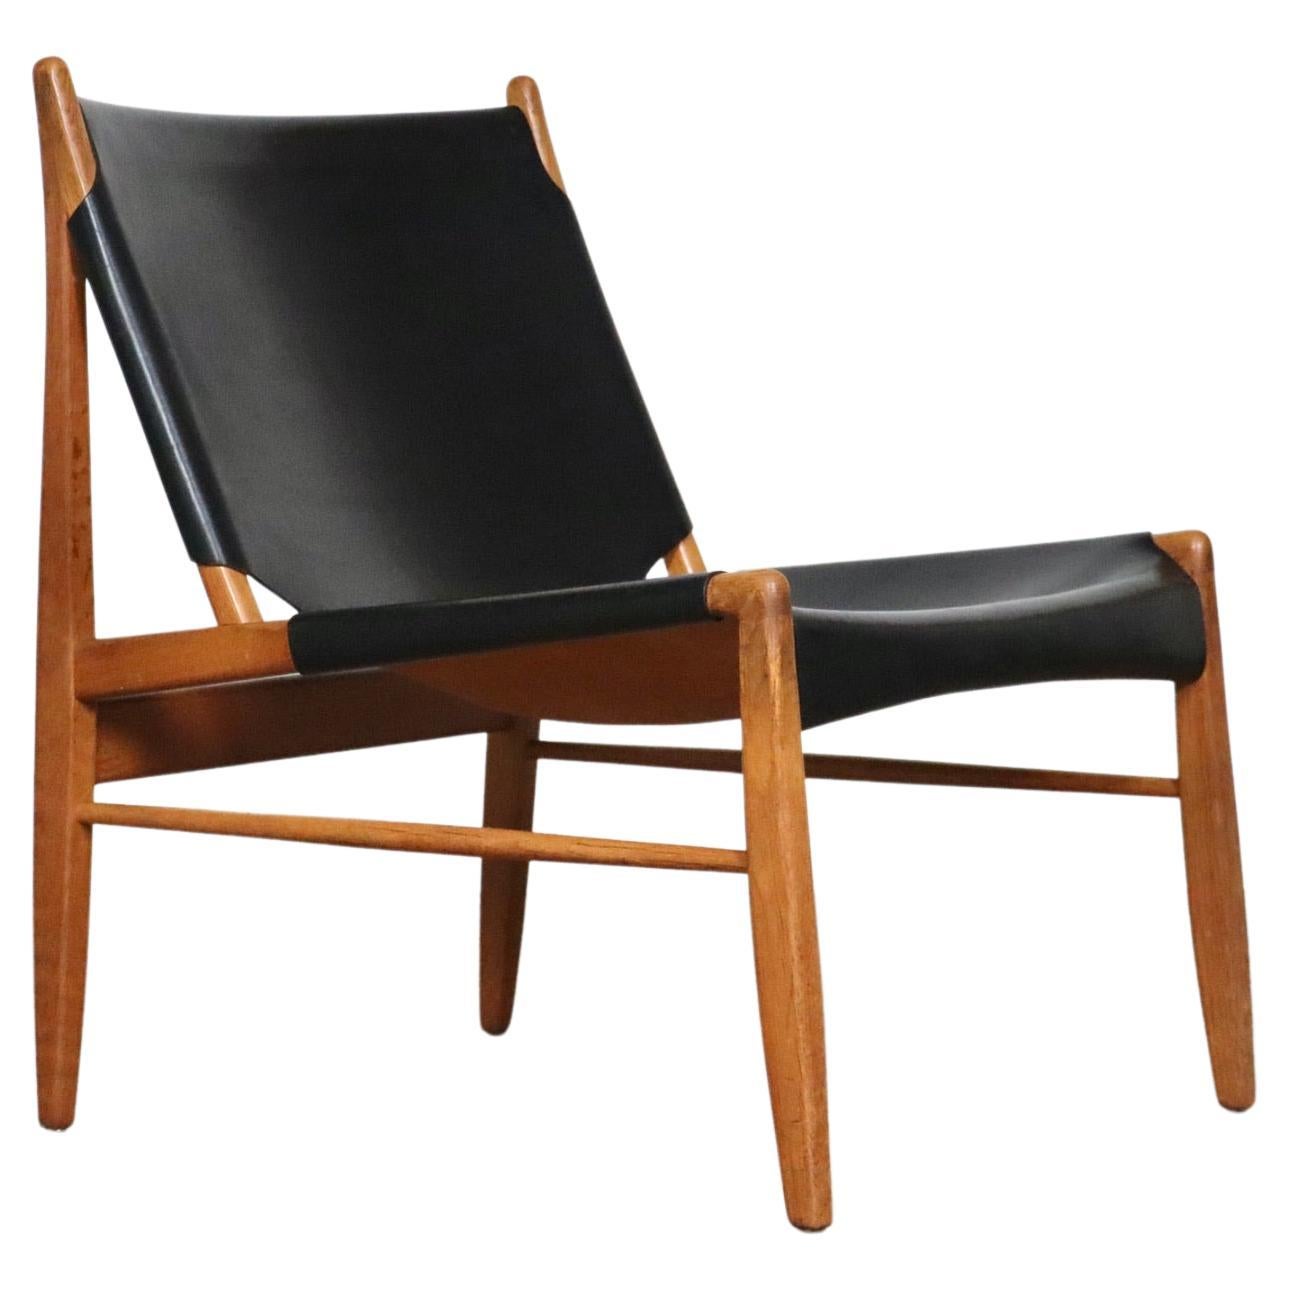 Chimney Lounge Chair Modell 1192 von Franz Xaver Lutz für WK Möbel, 1958